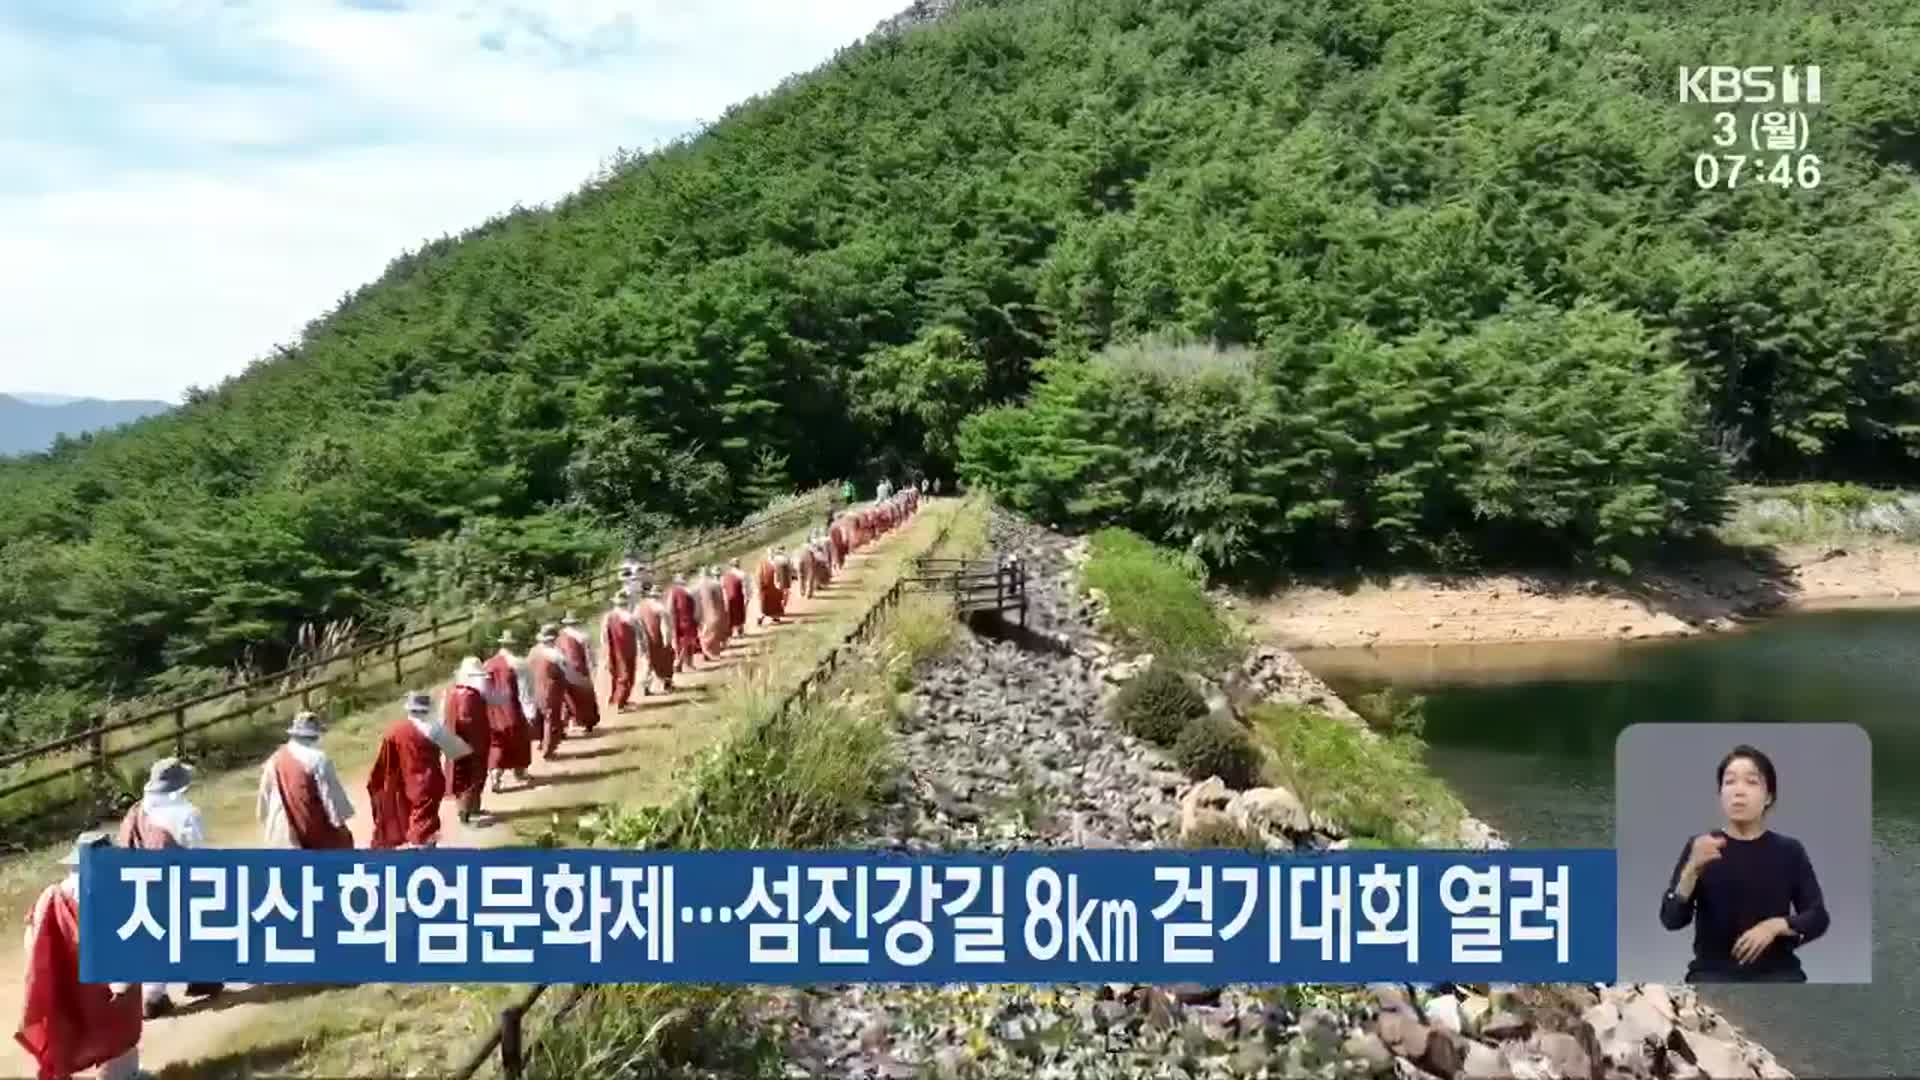 지리산 화엄문화제…섬진강길 8km 걷기대회 열려